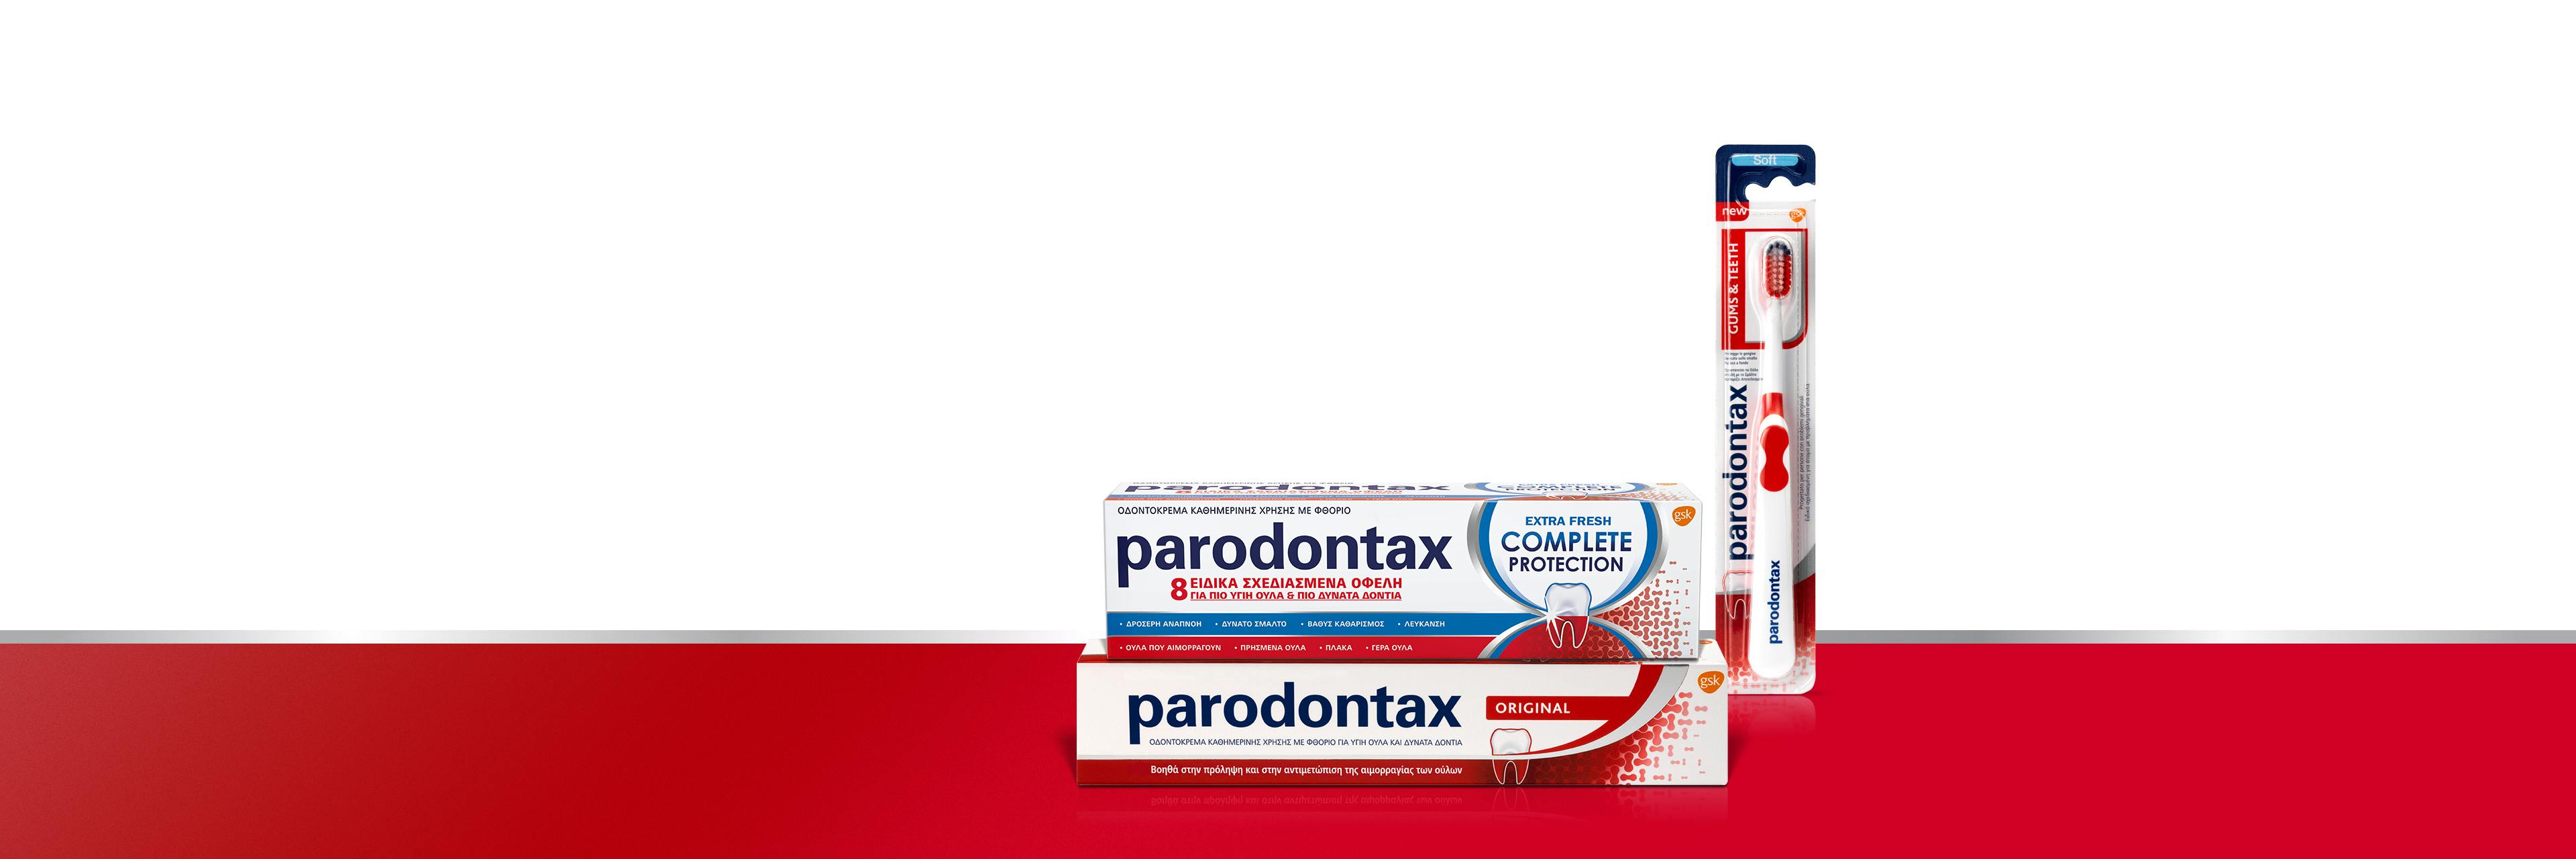 Οδοντόκρεμα parodontax και στοματικό διάλυμα Corsodyl Intensive Treatment χωρίς αλκοόλ για καθημερινή χρήση